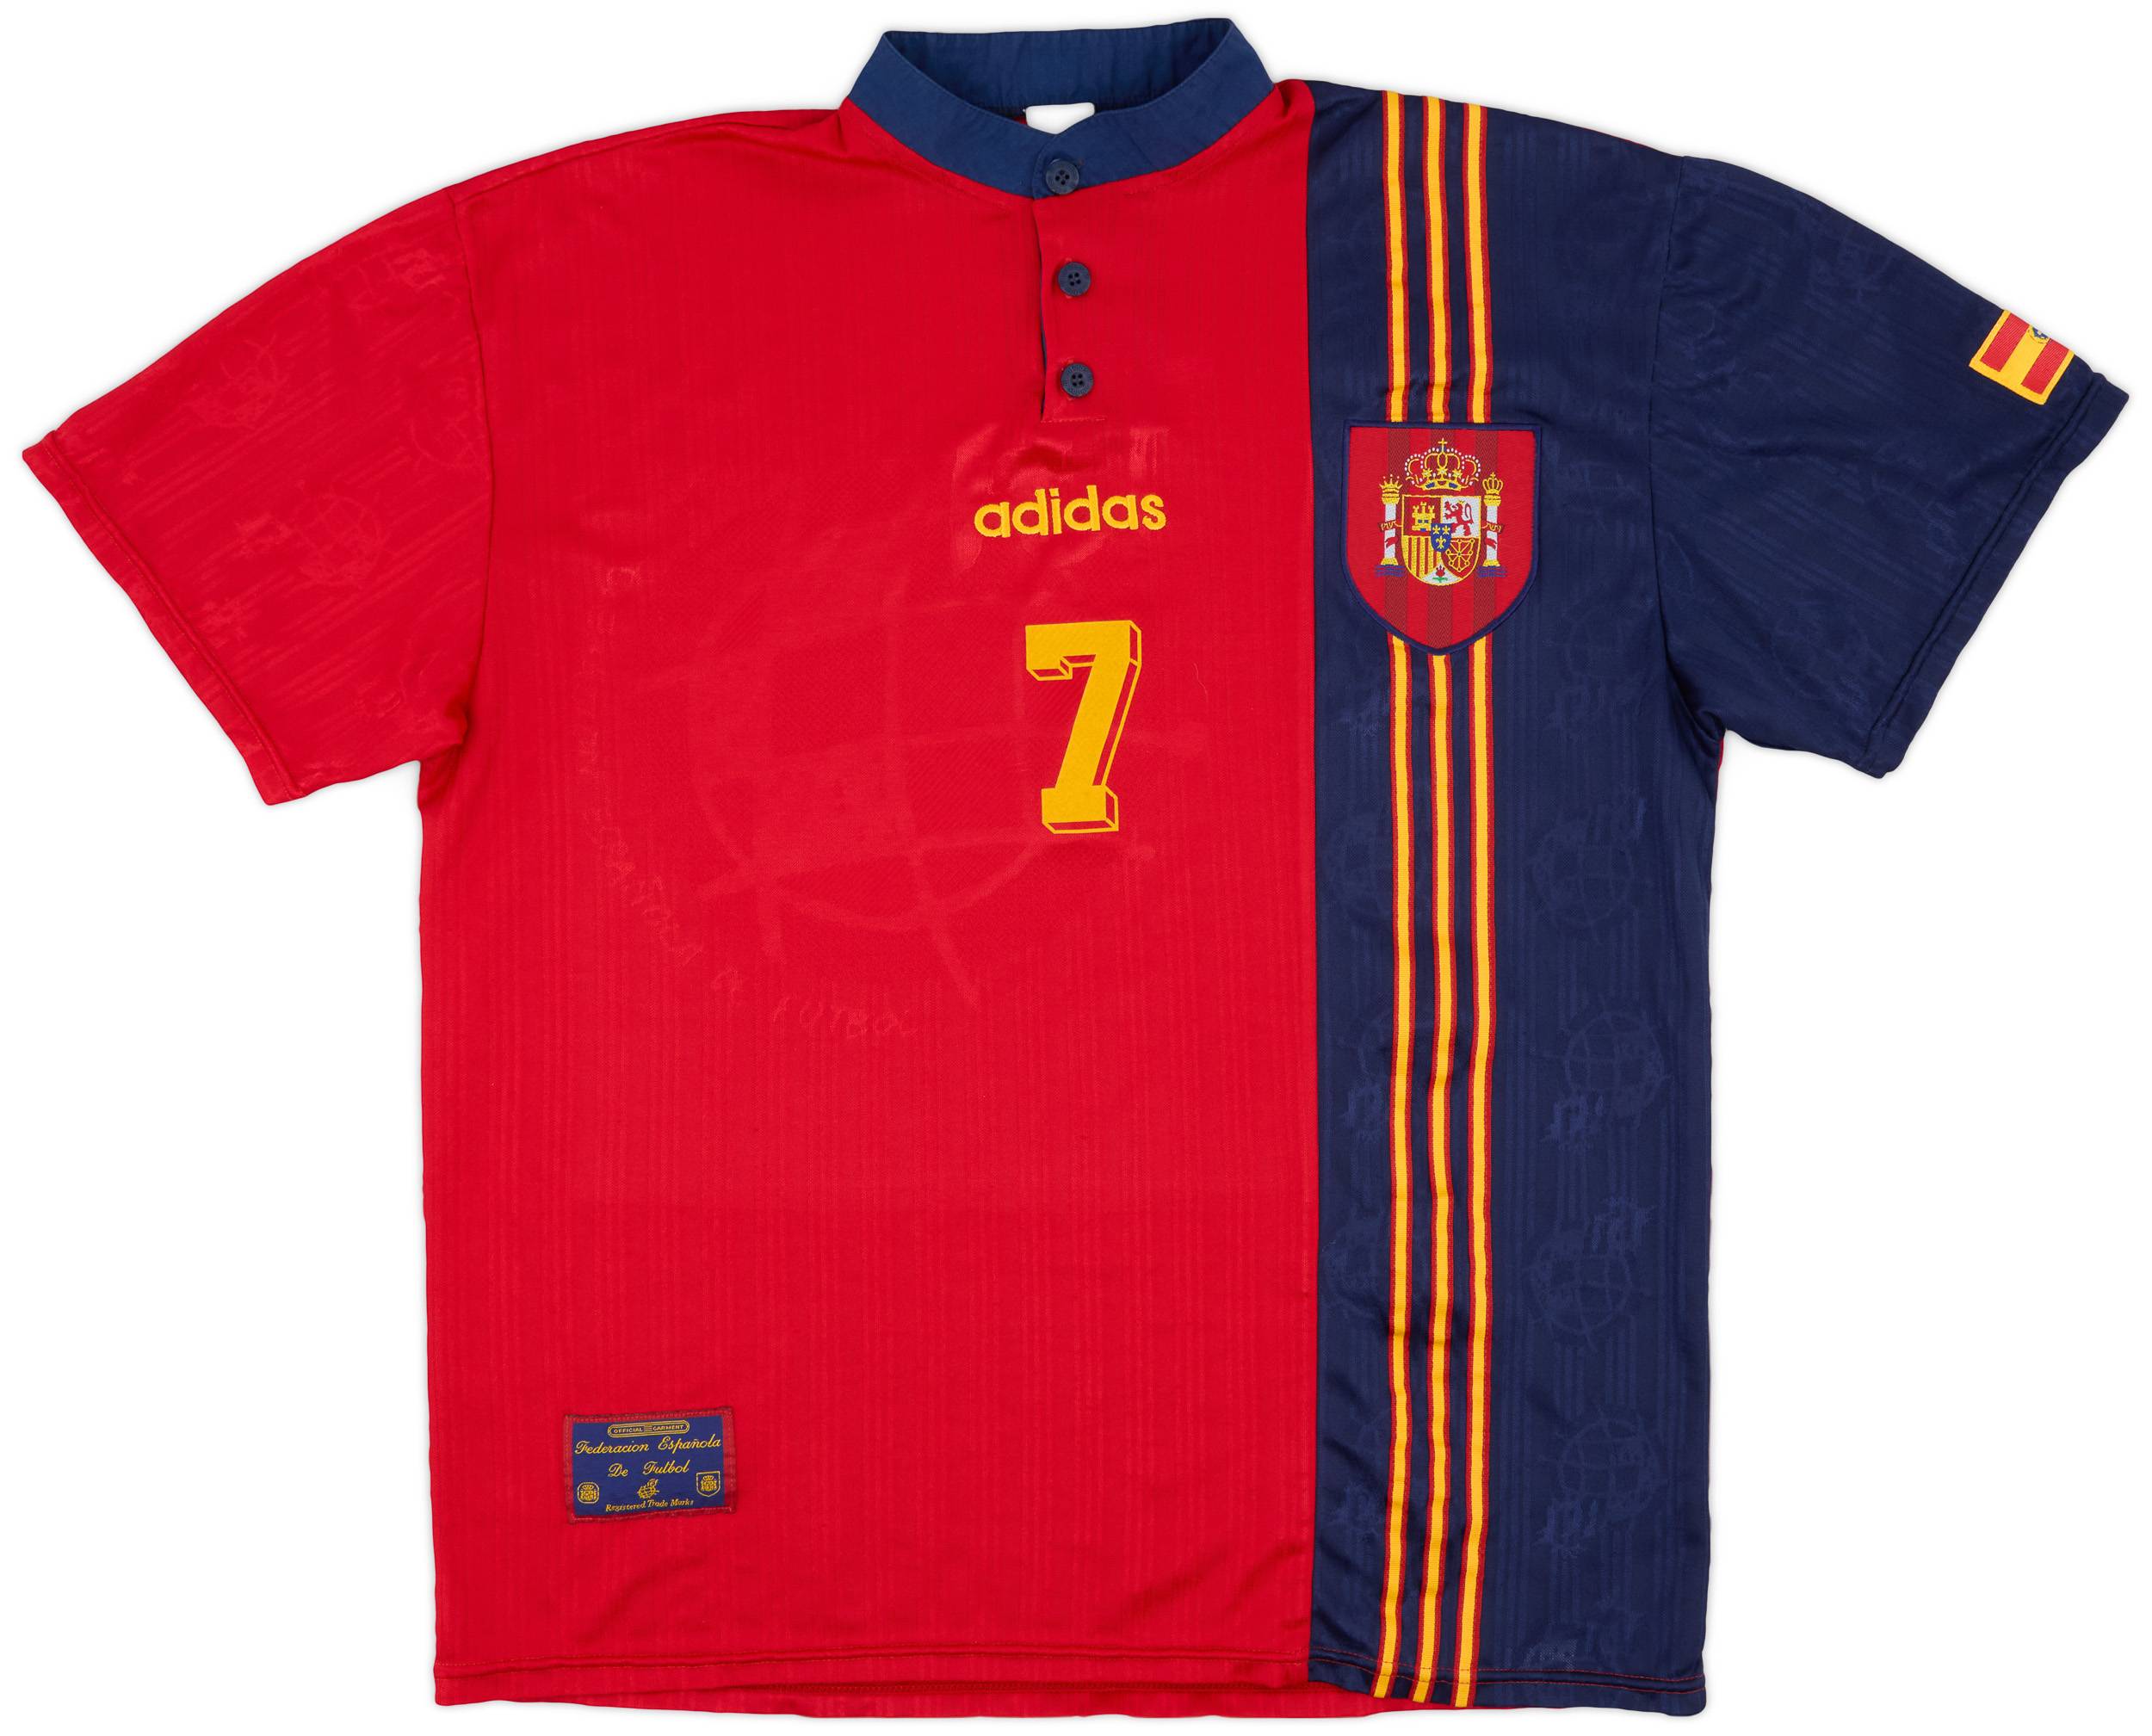 1996-98 Spain Home Shirt #7 - 8/10 - (XL)